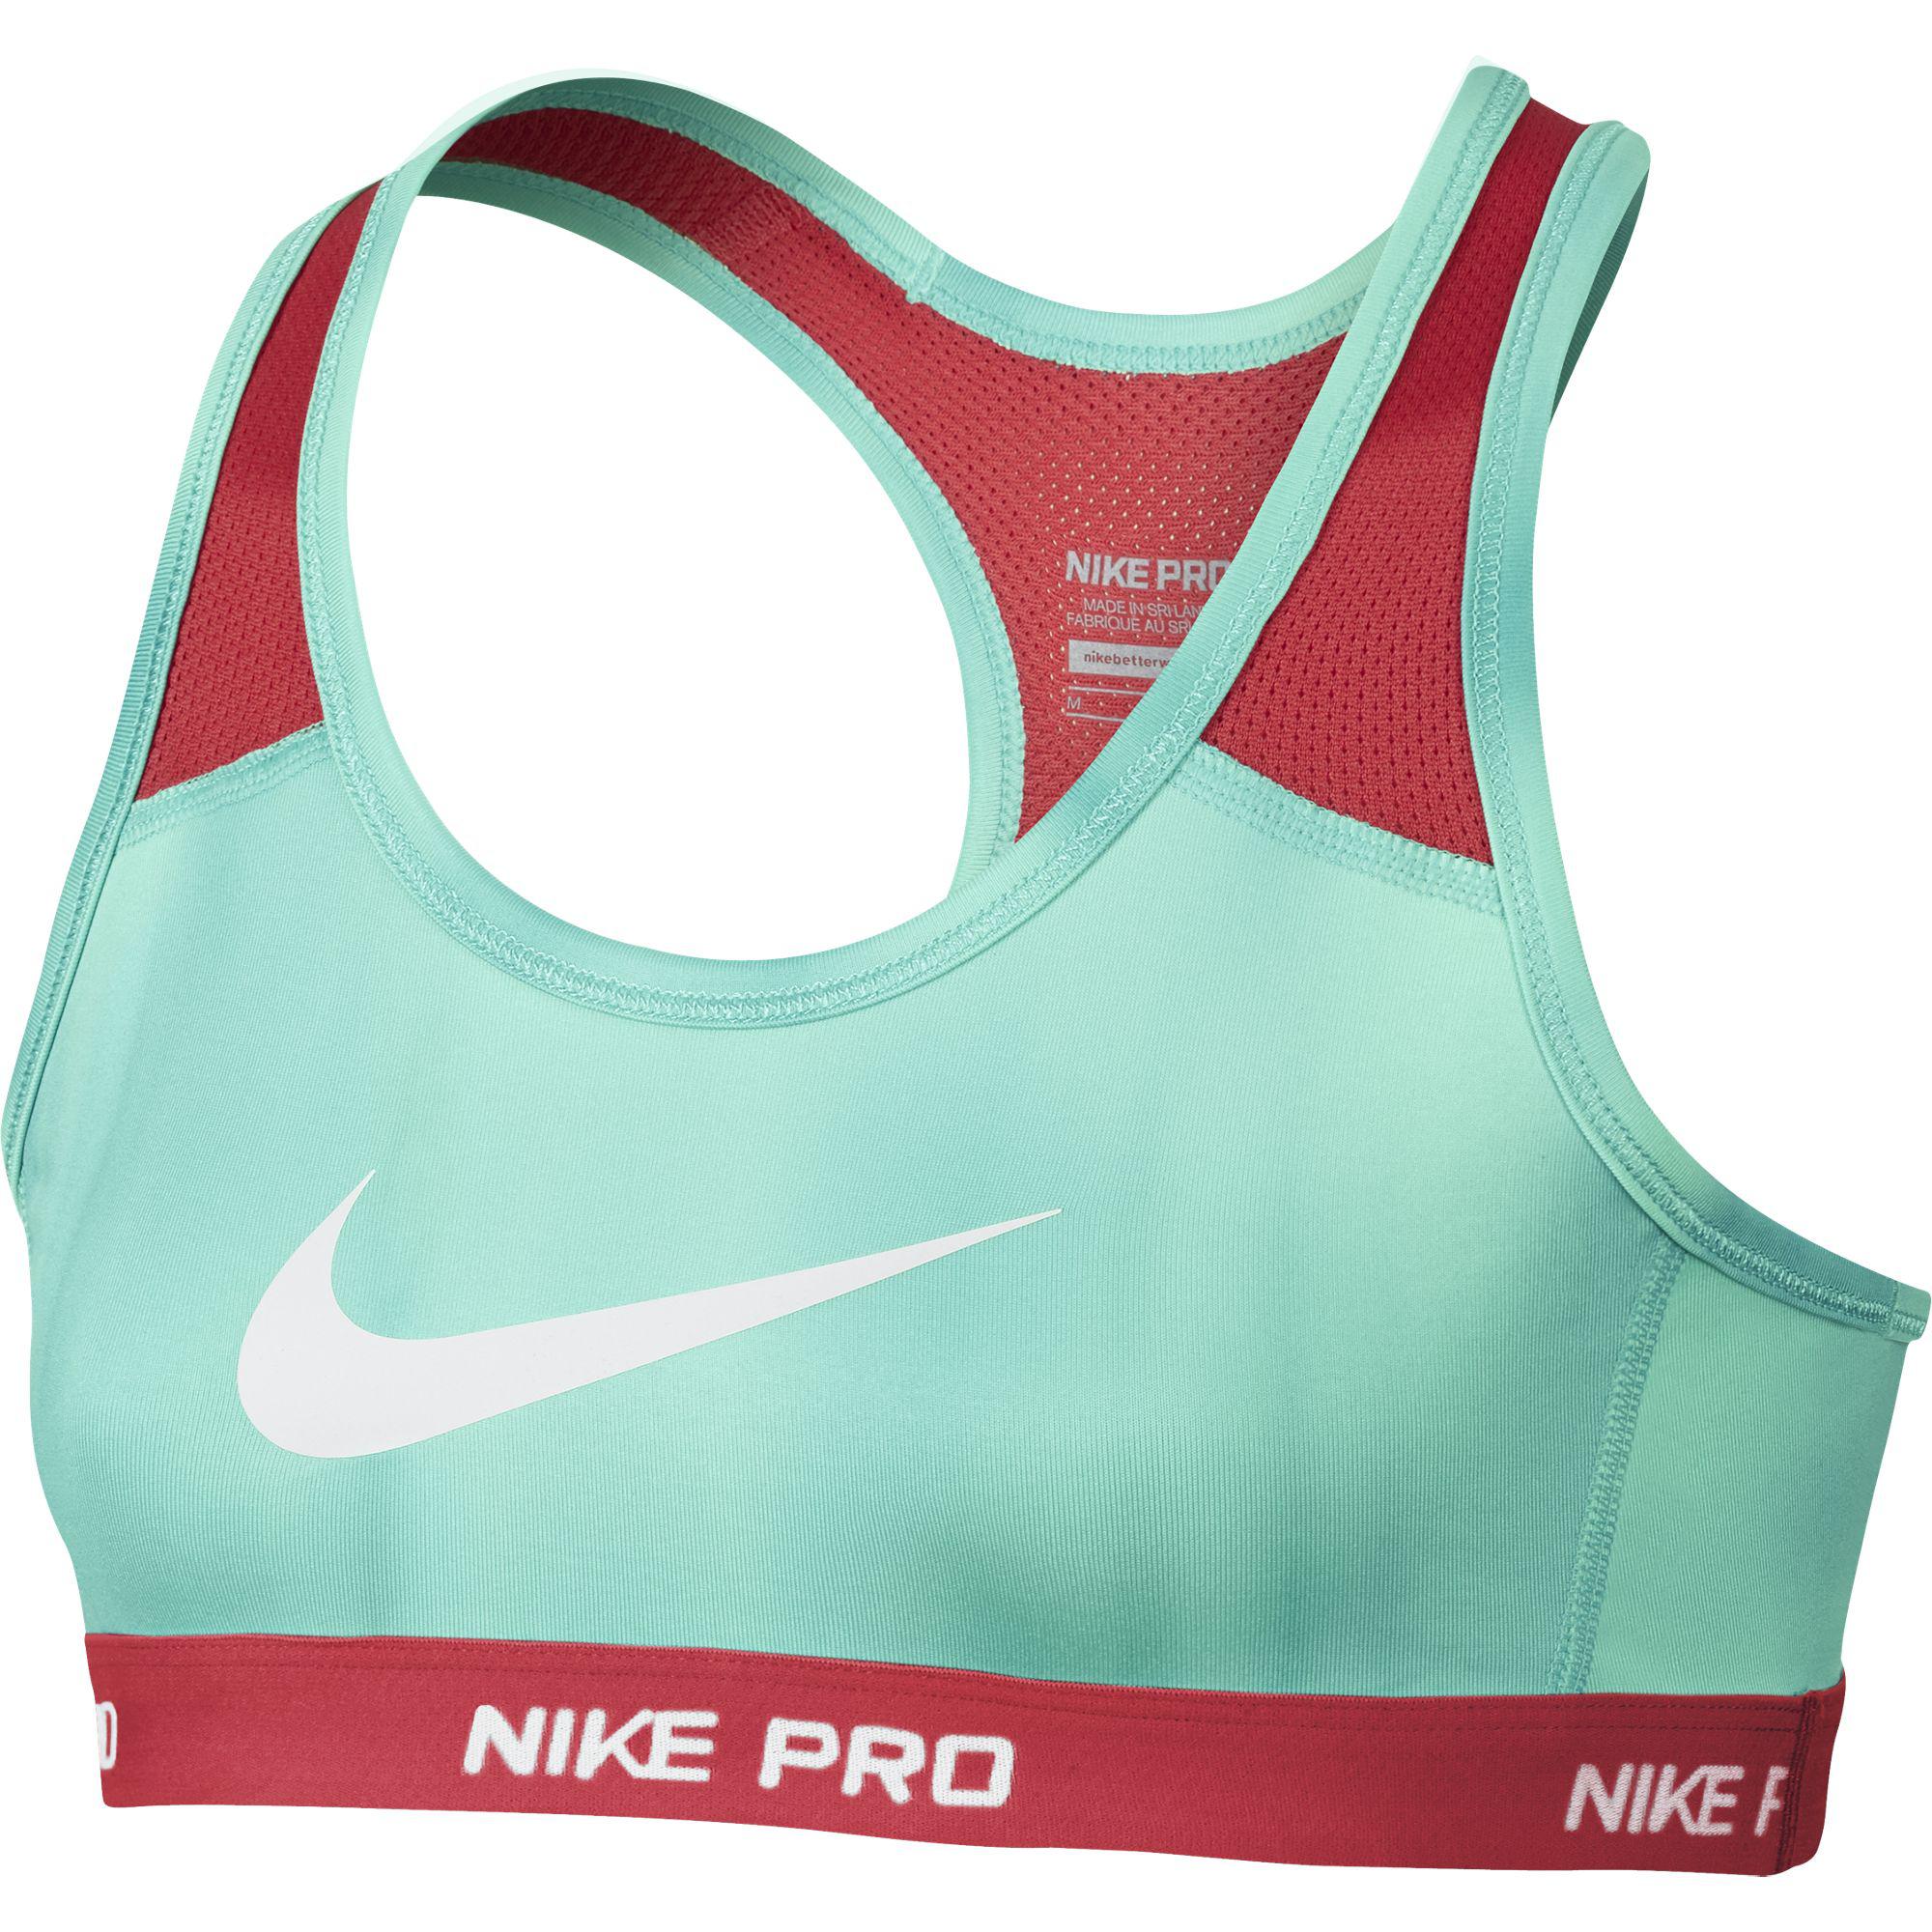 Nike Girls Pro Allover Print Sports Bra - Artisan Teal/Daring Red ...